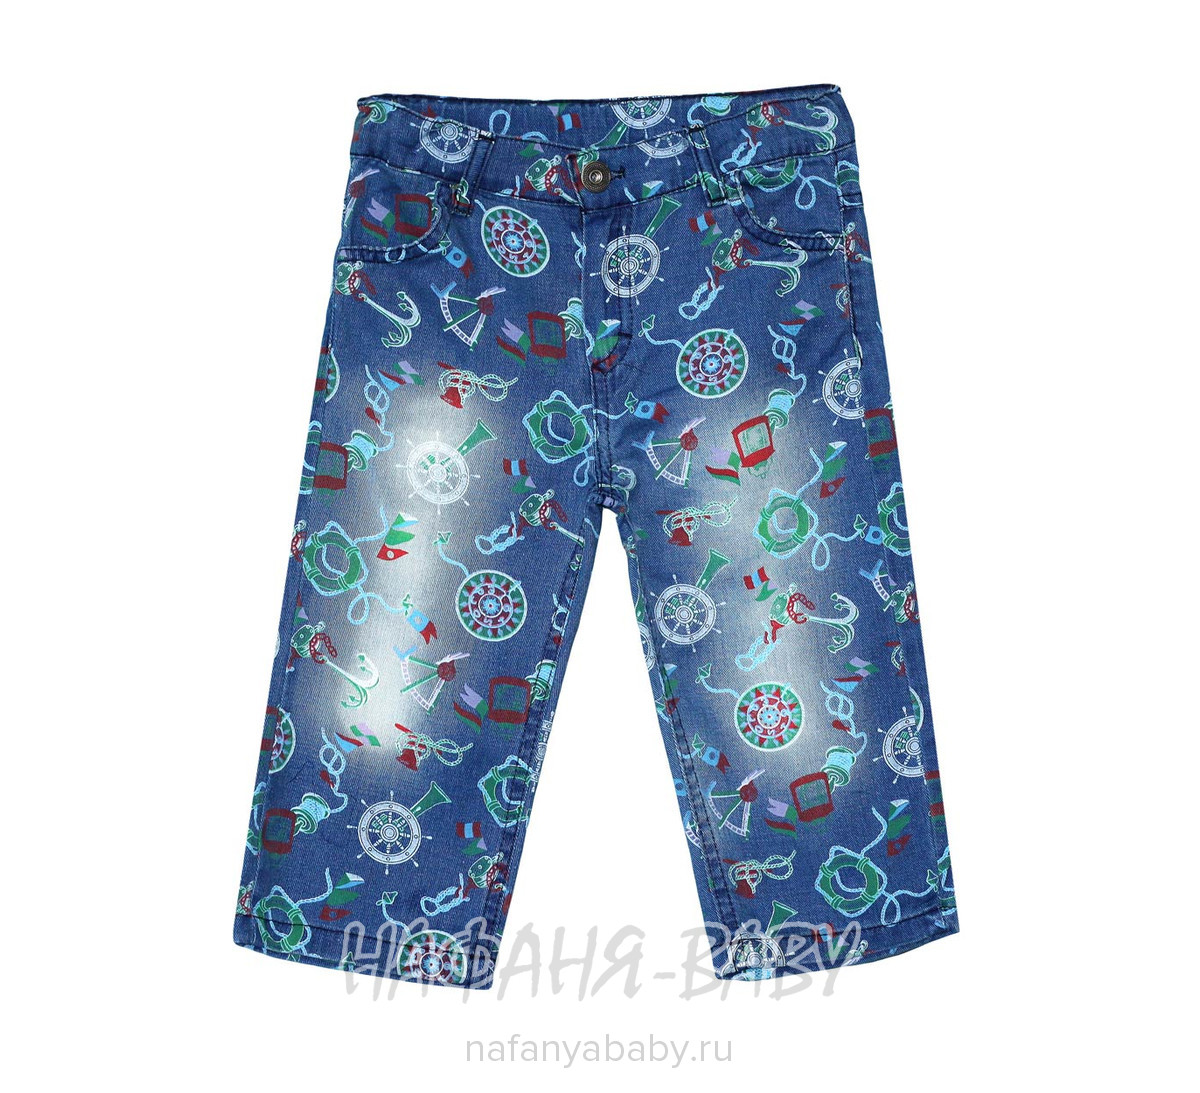 Детские джинсовые шорты MINIA, купить в интернет магазине Нафаня. арт: 11285.